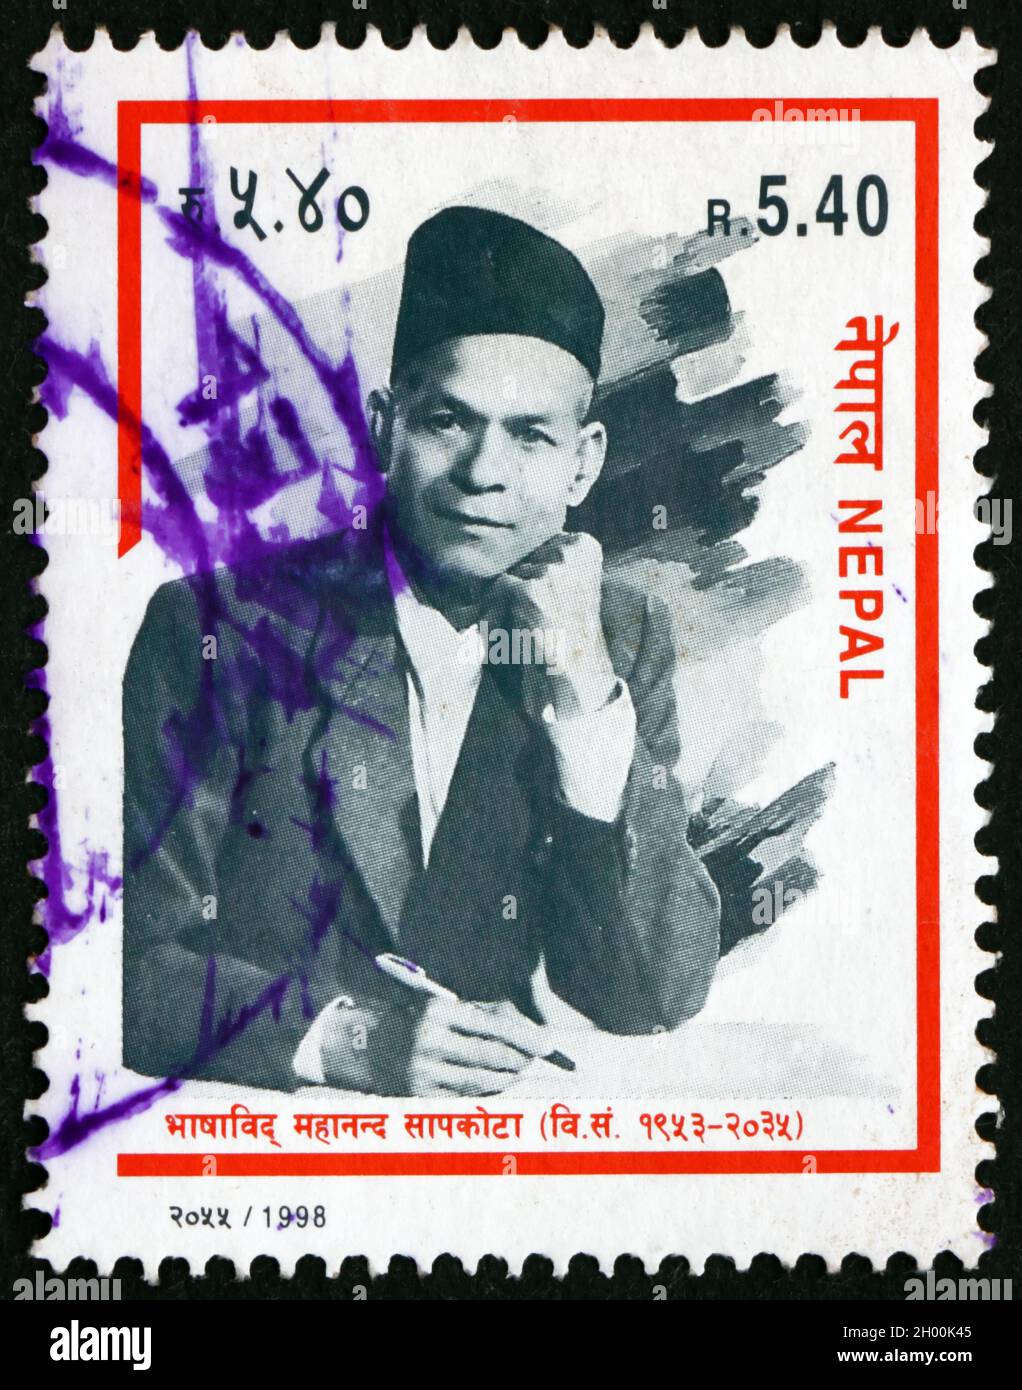 NÉPAL - VERS 1998: Un timbre imprimé au Népal montre Mahananda Sapkota, linguiste, vers 1998 Banque D'Images